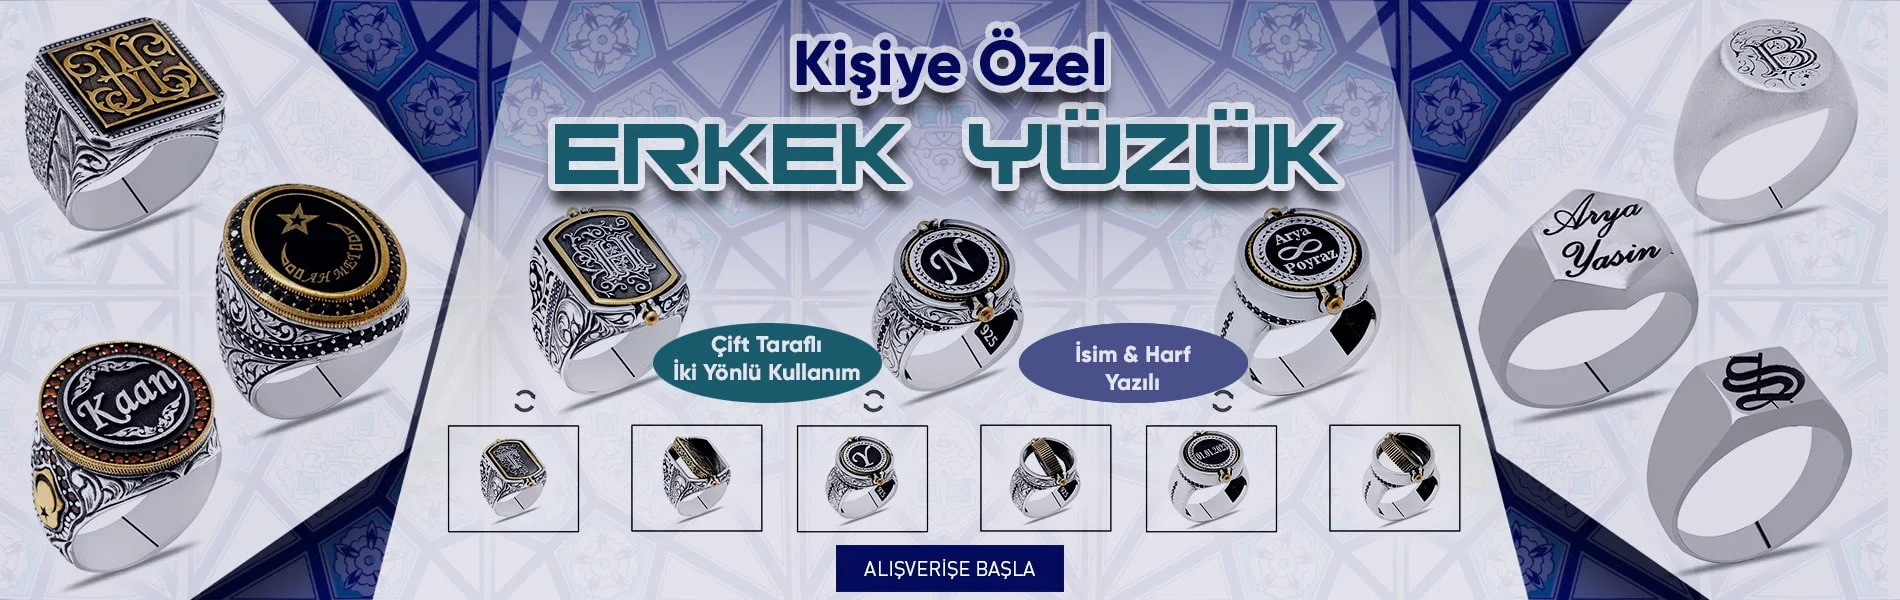 kisiye-ozel-yuzuk-site-banner-min